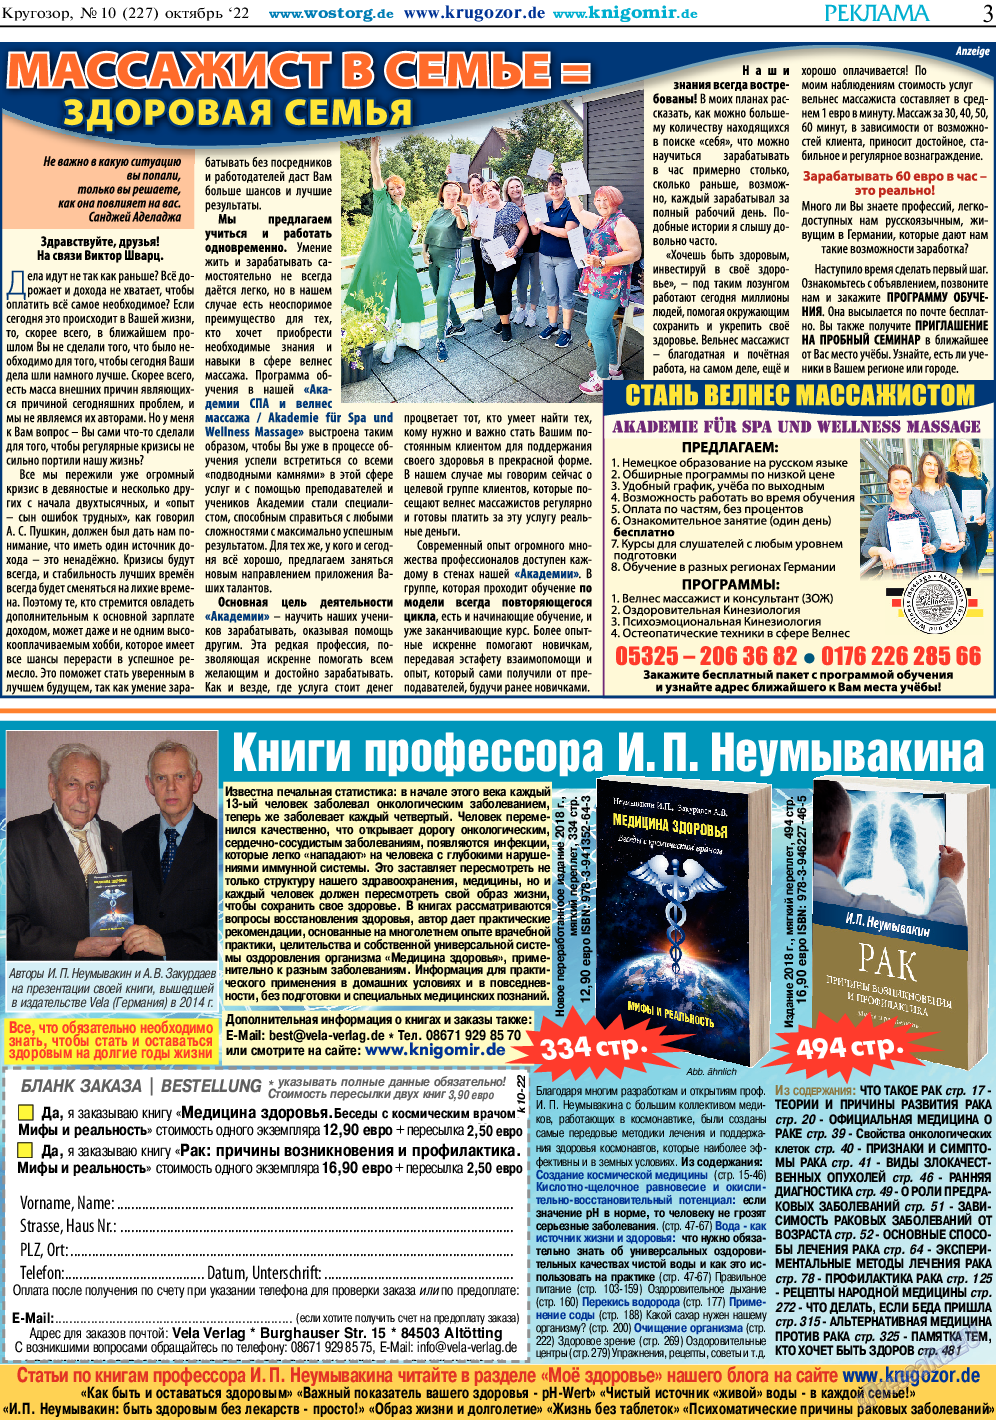 Кругозор, газета. 2022 №10 стр.3